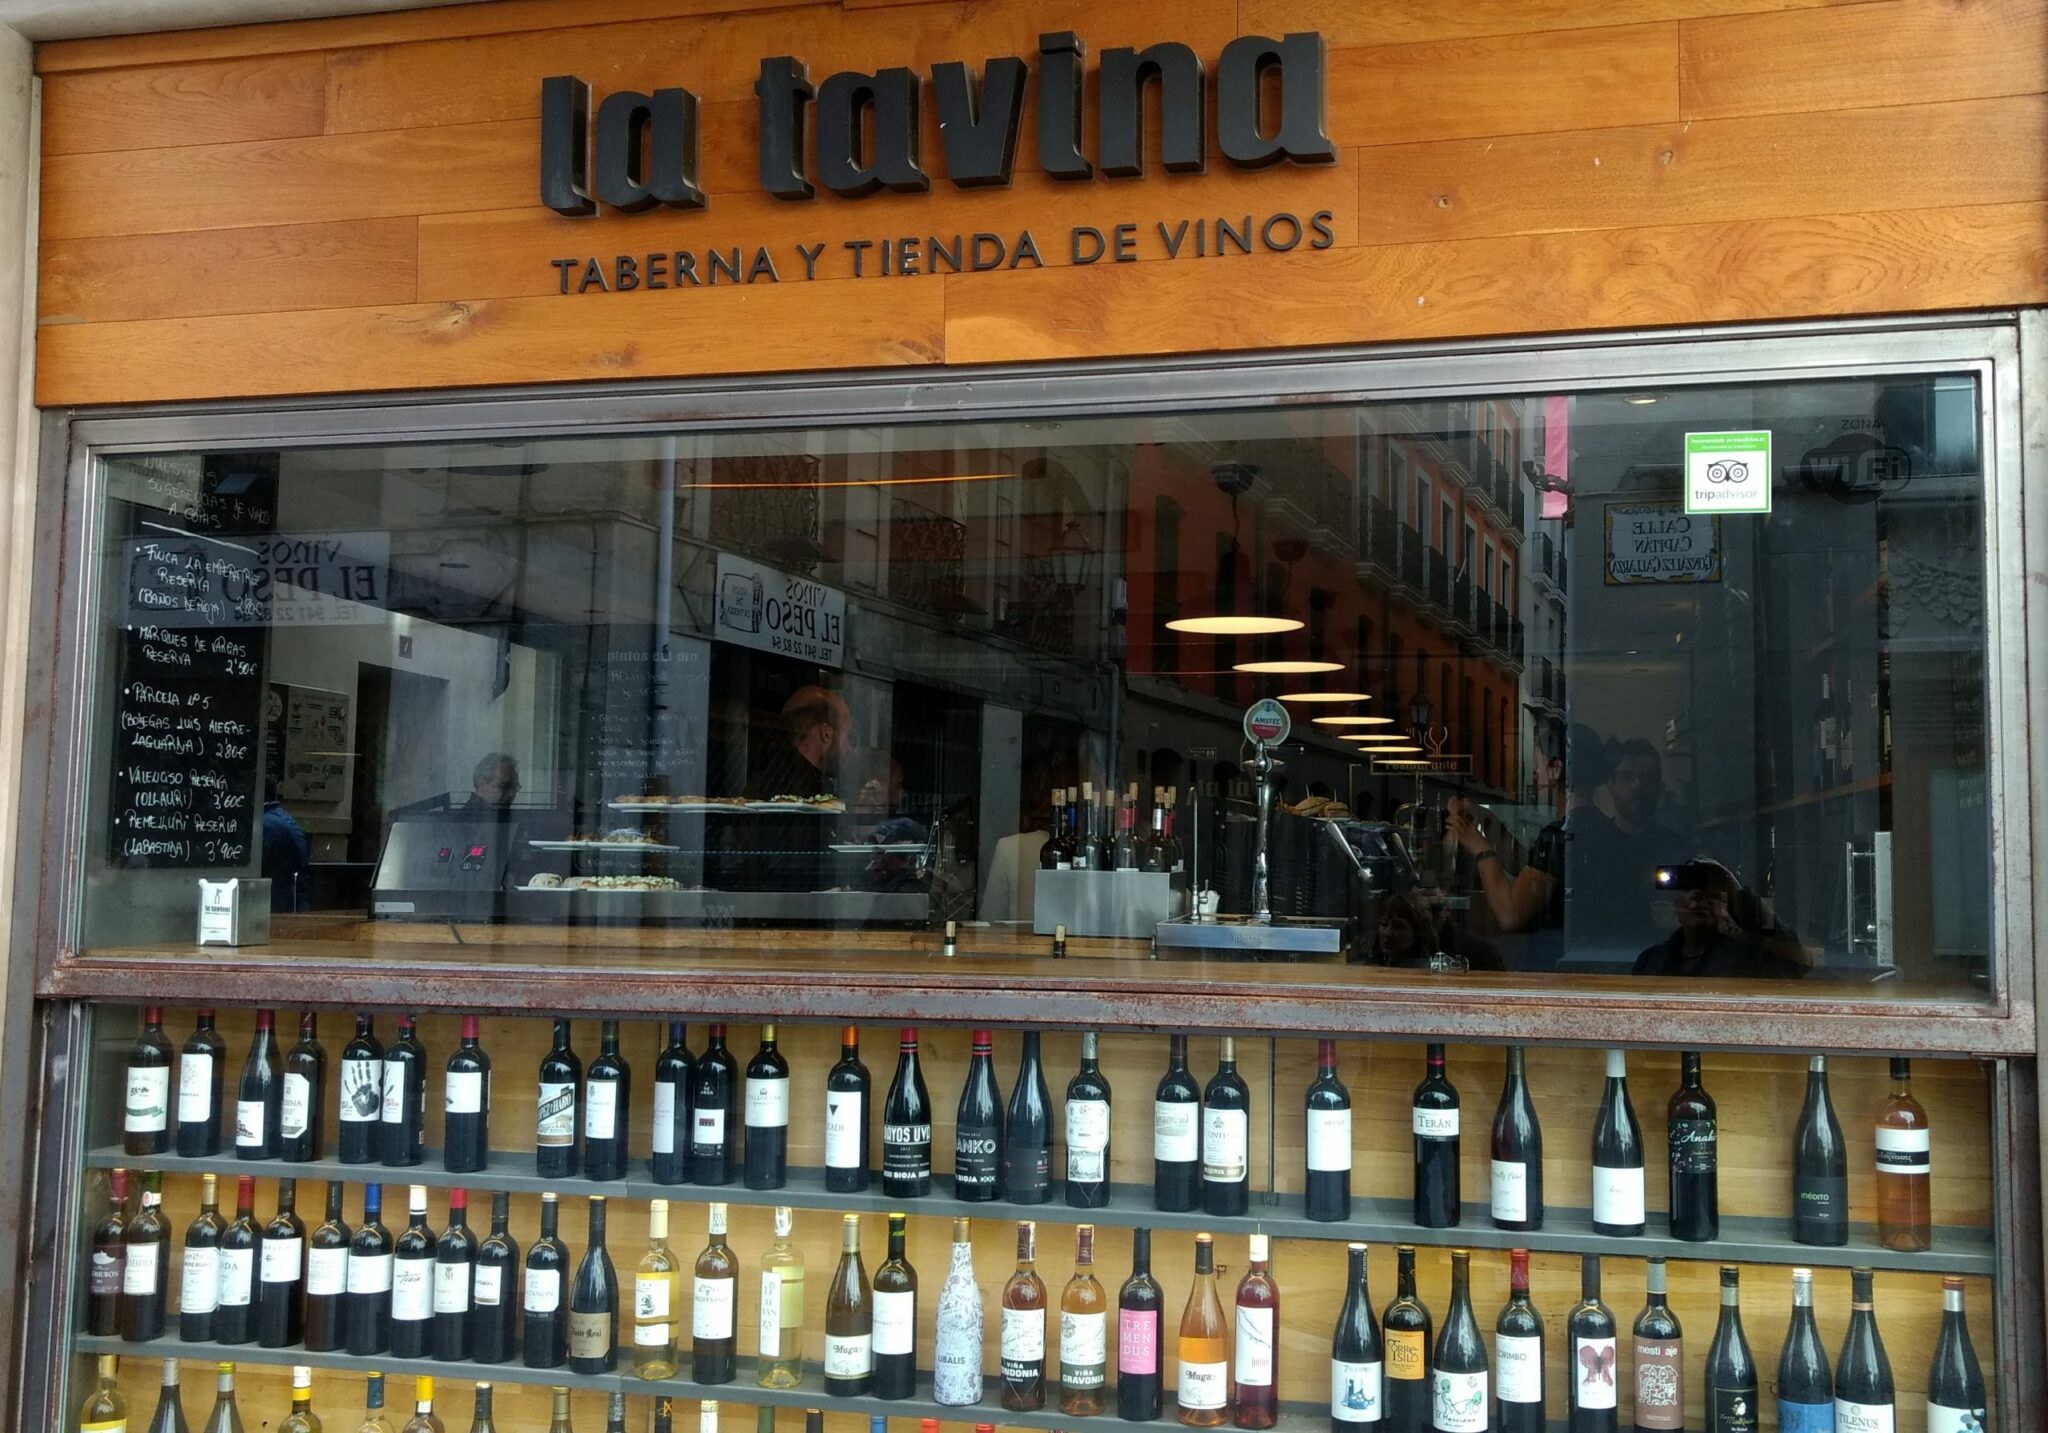 Taberna La Tavina